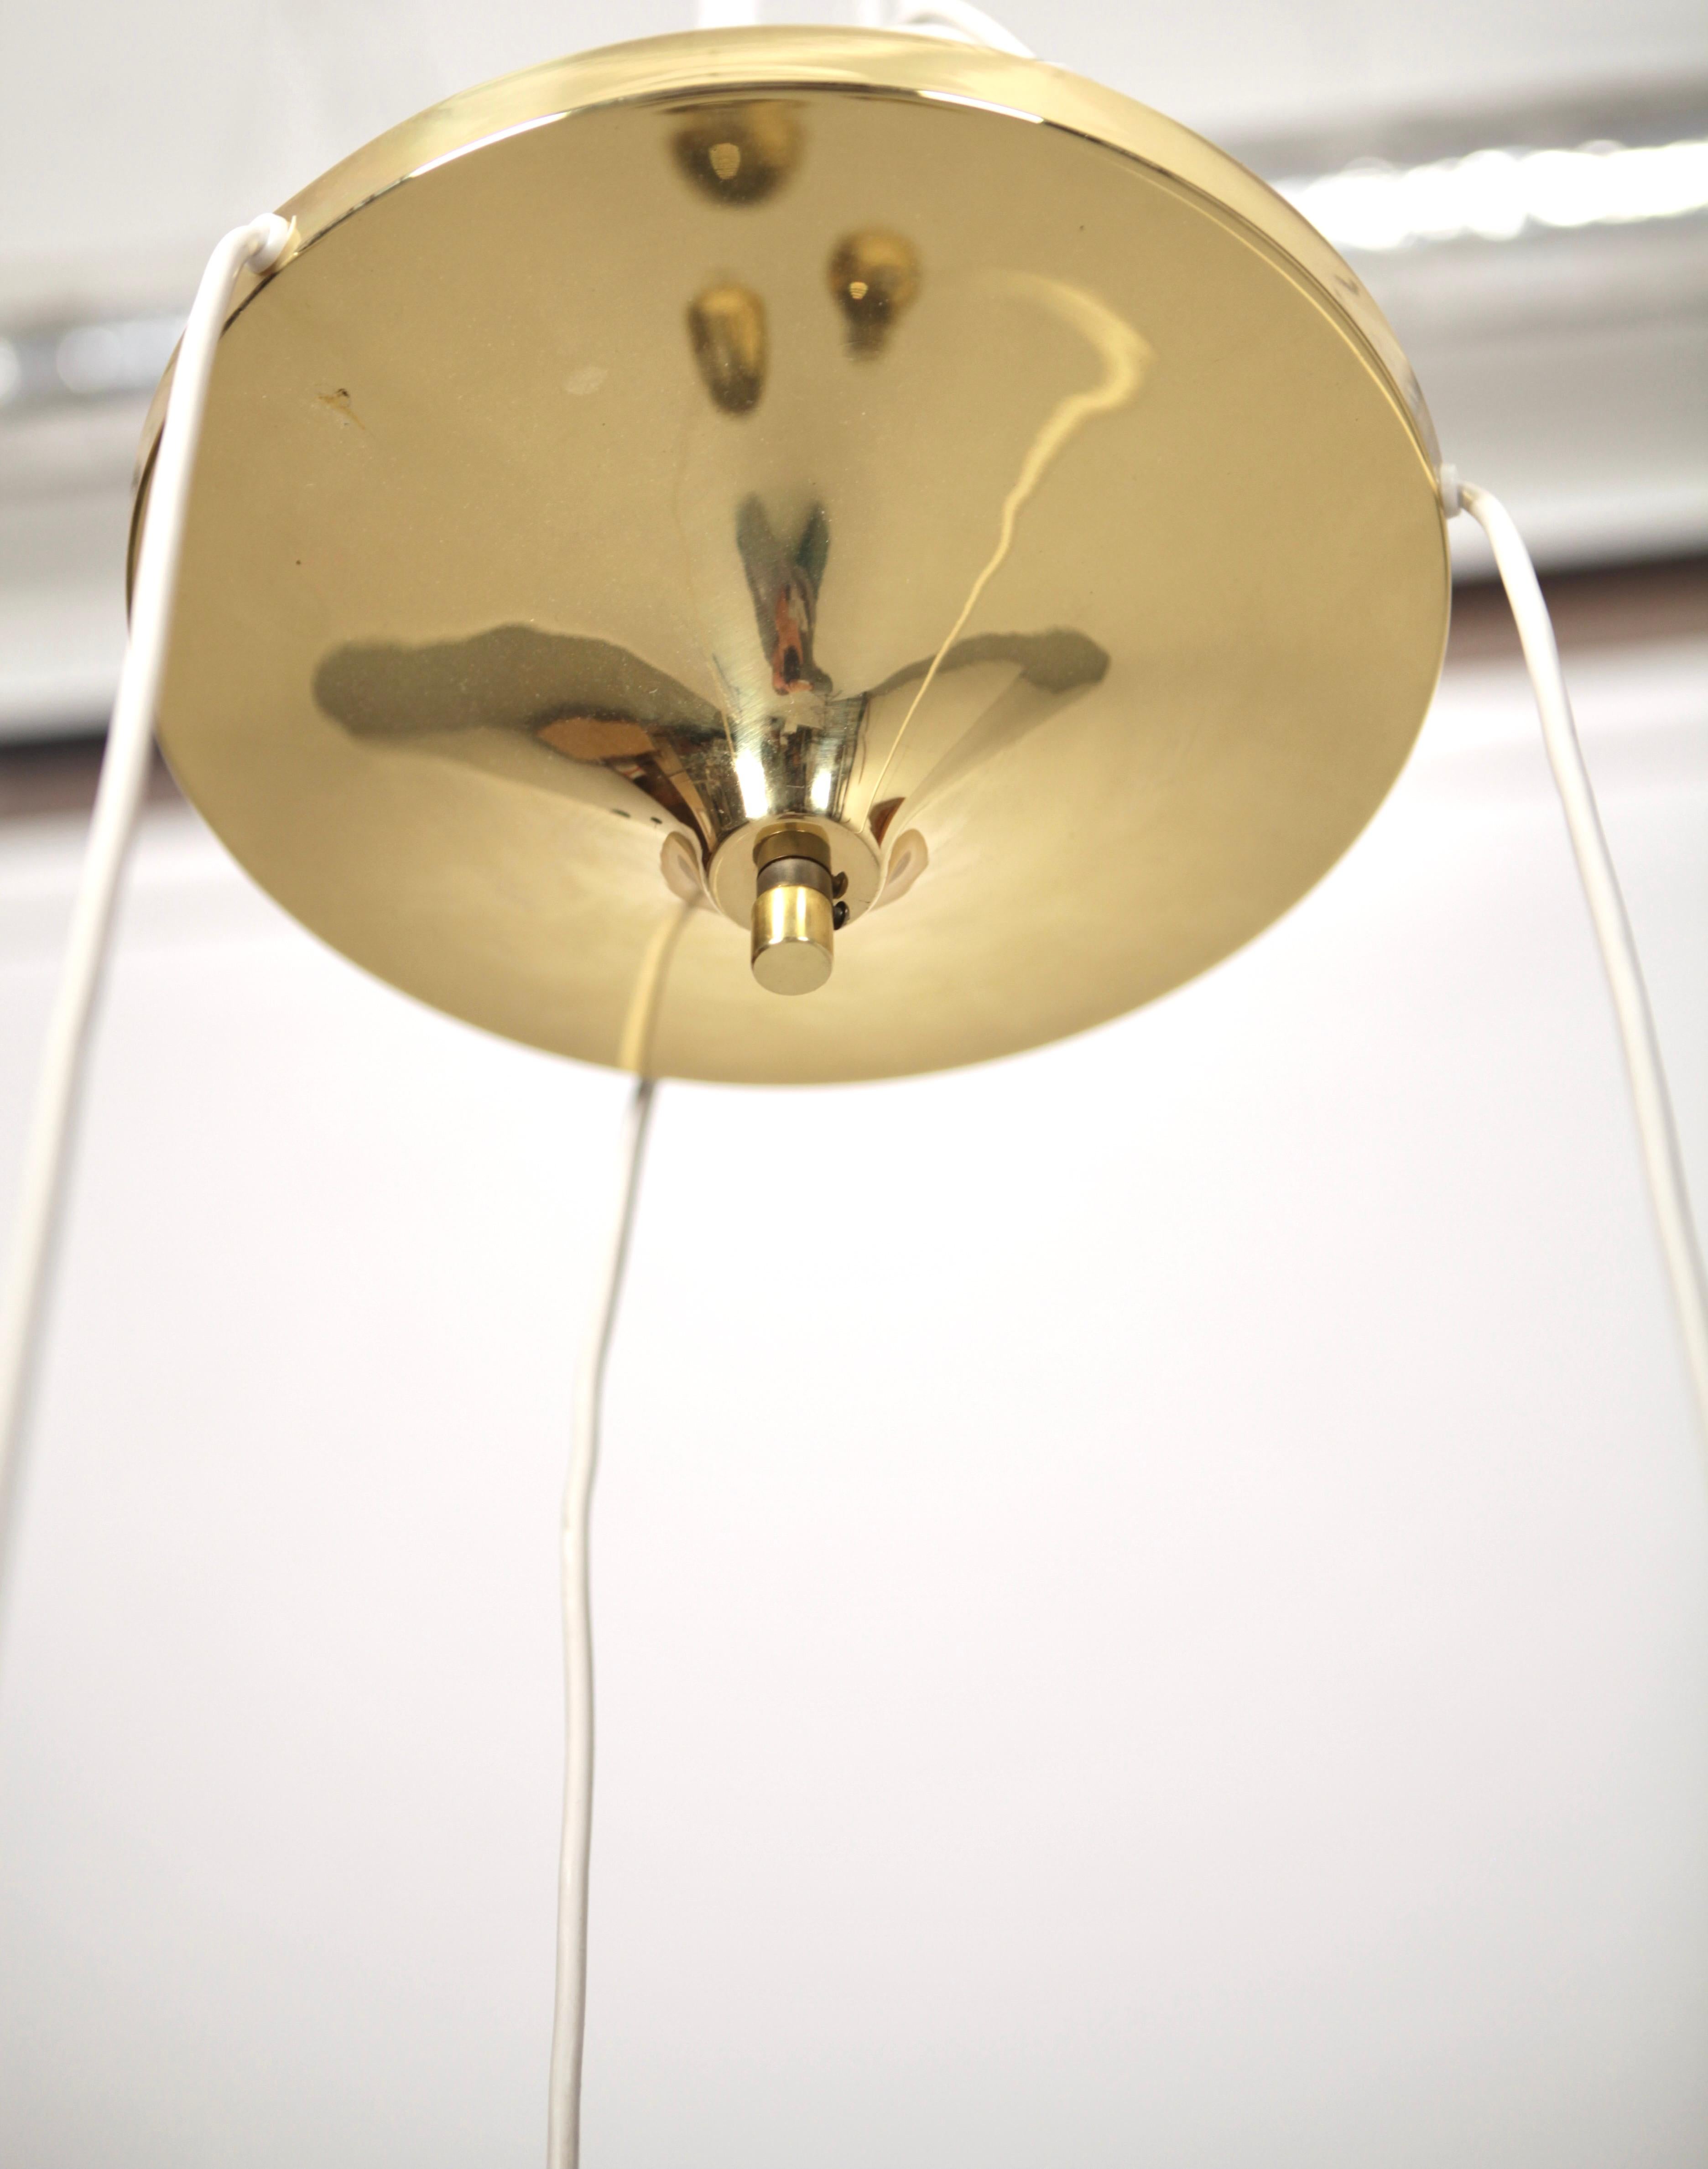 Mid-20th Century Hans-Agne Jakobsson, 3 Pendant Ceiling Light, Brass, Sweden 1960s. For Sale